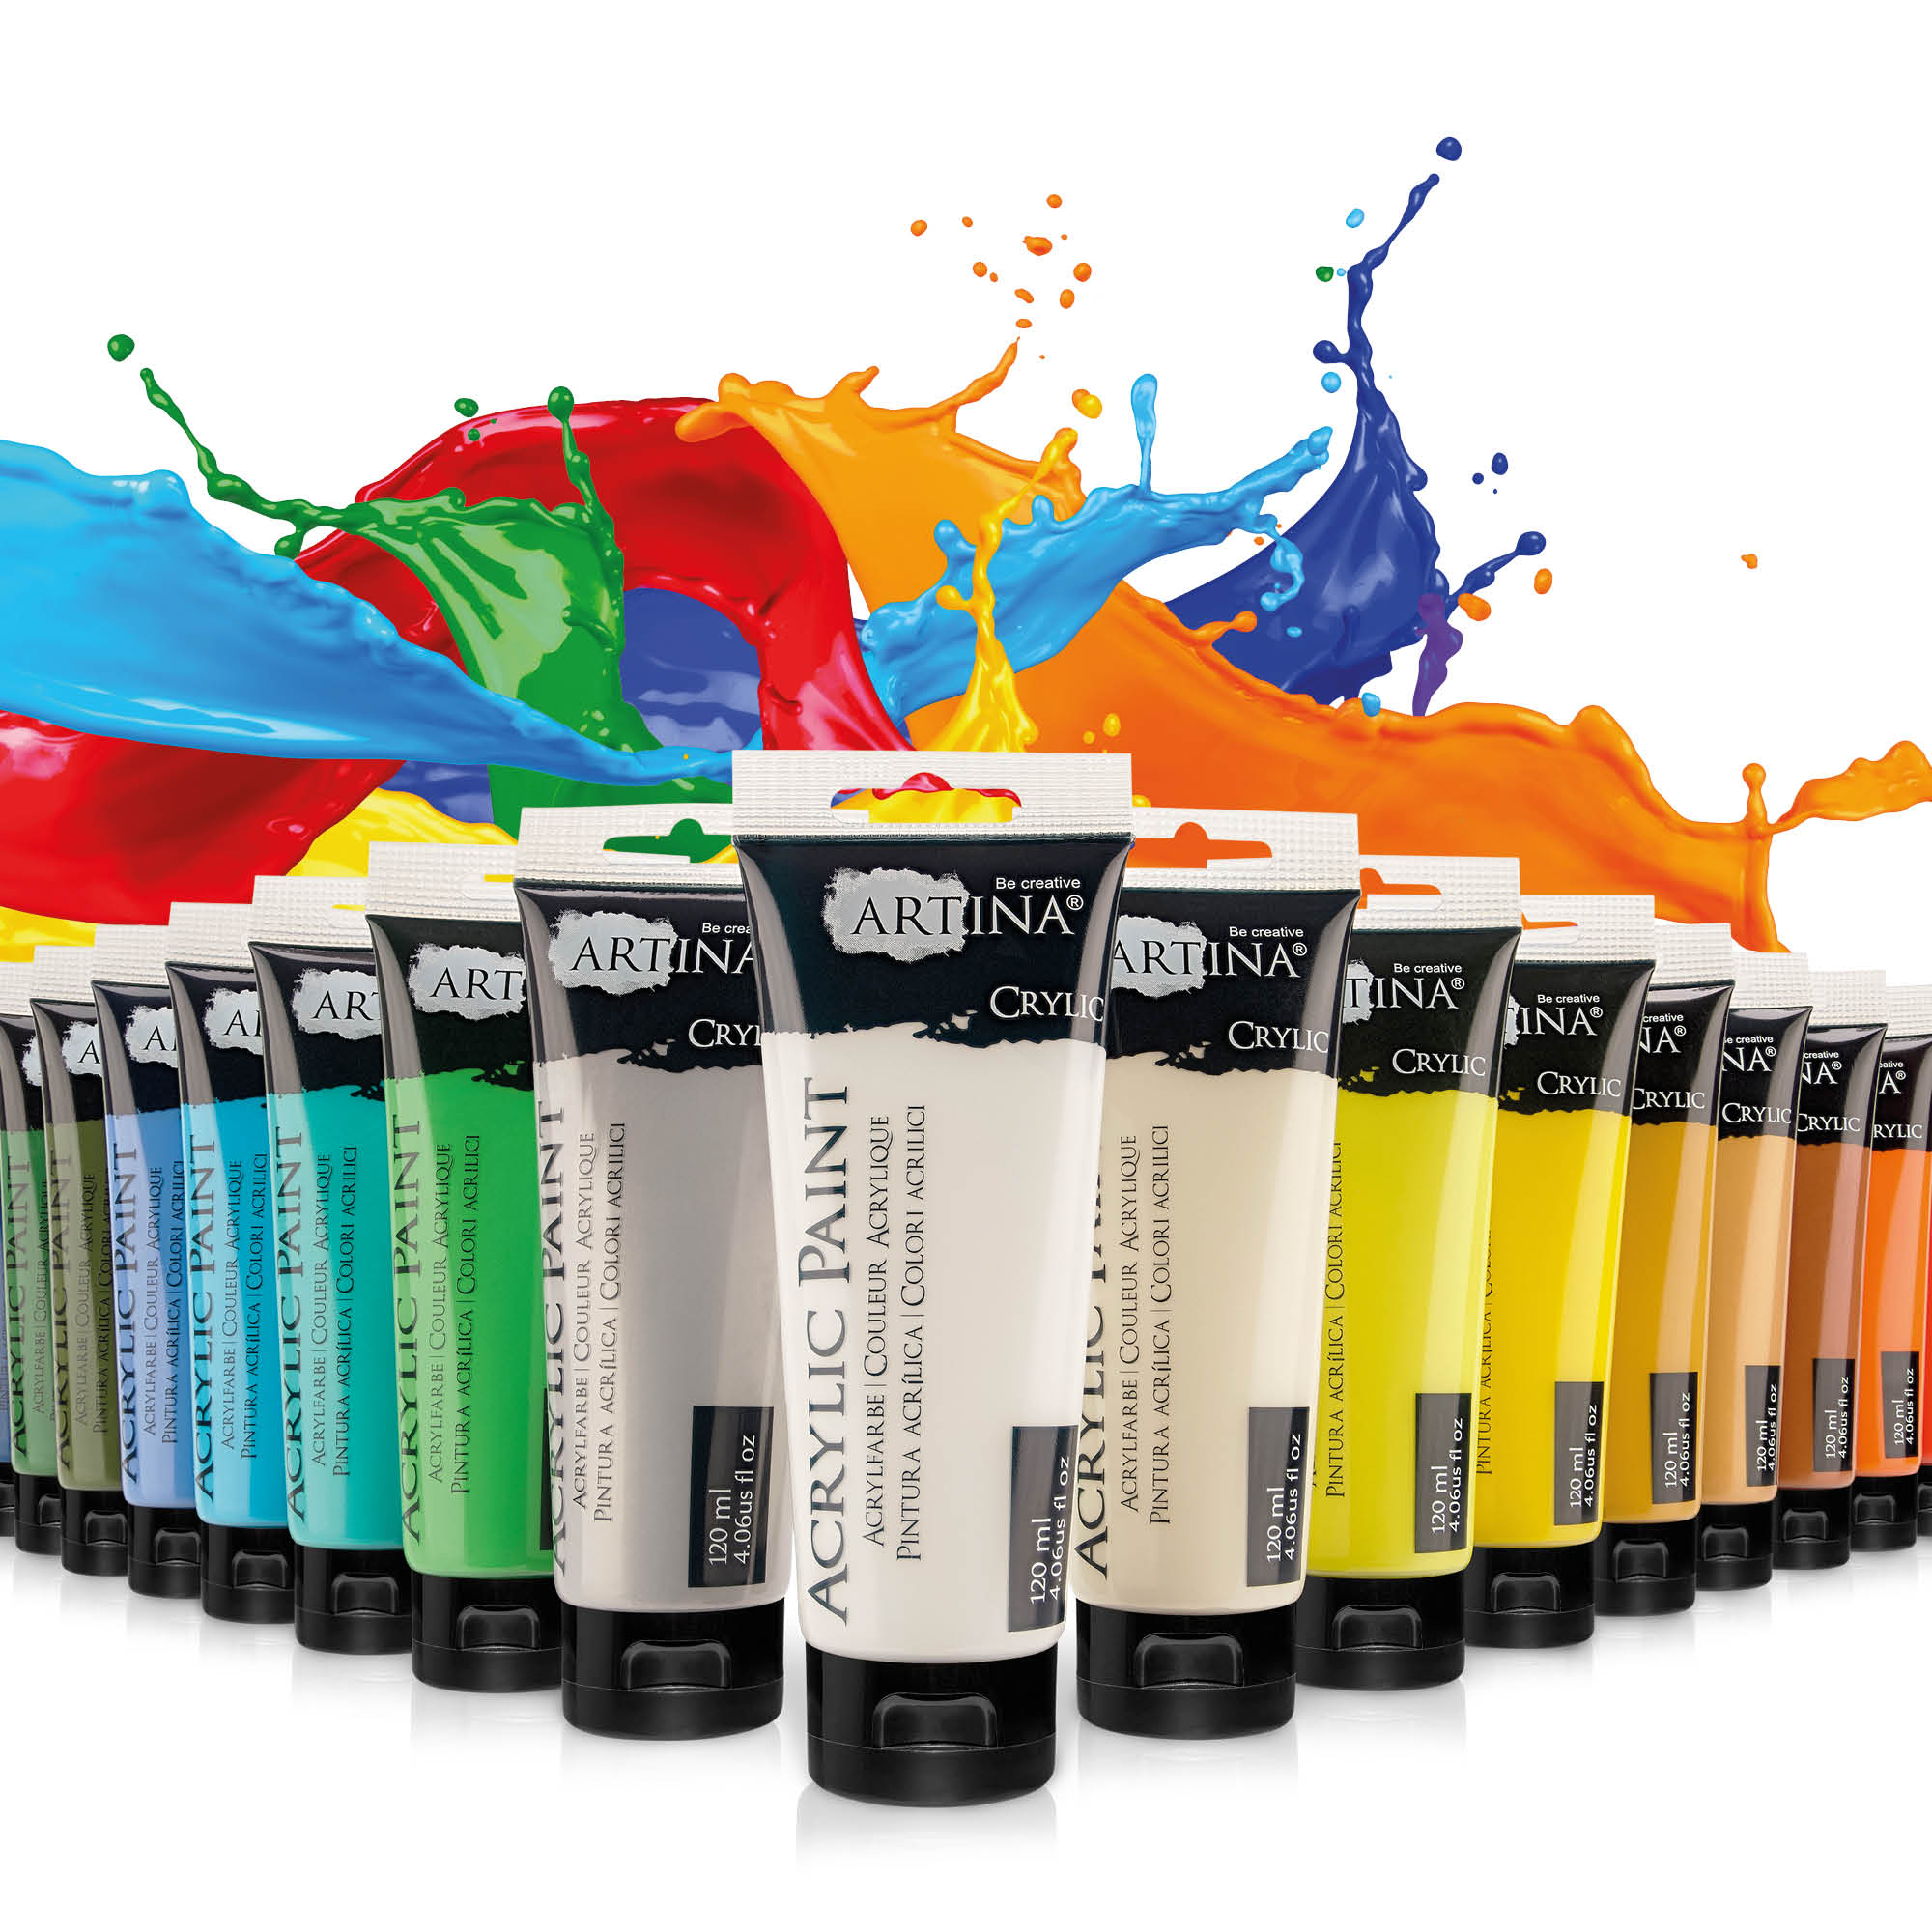 Aufstellung von Acrylfarben Tuben in diversen Farben